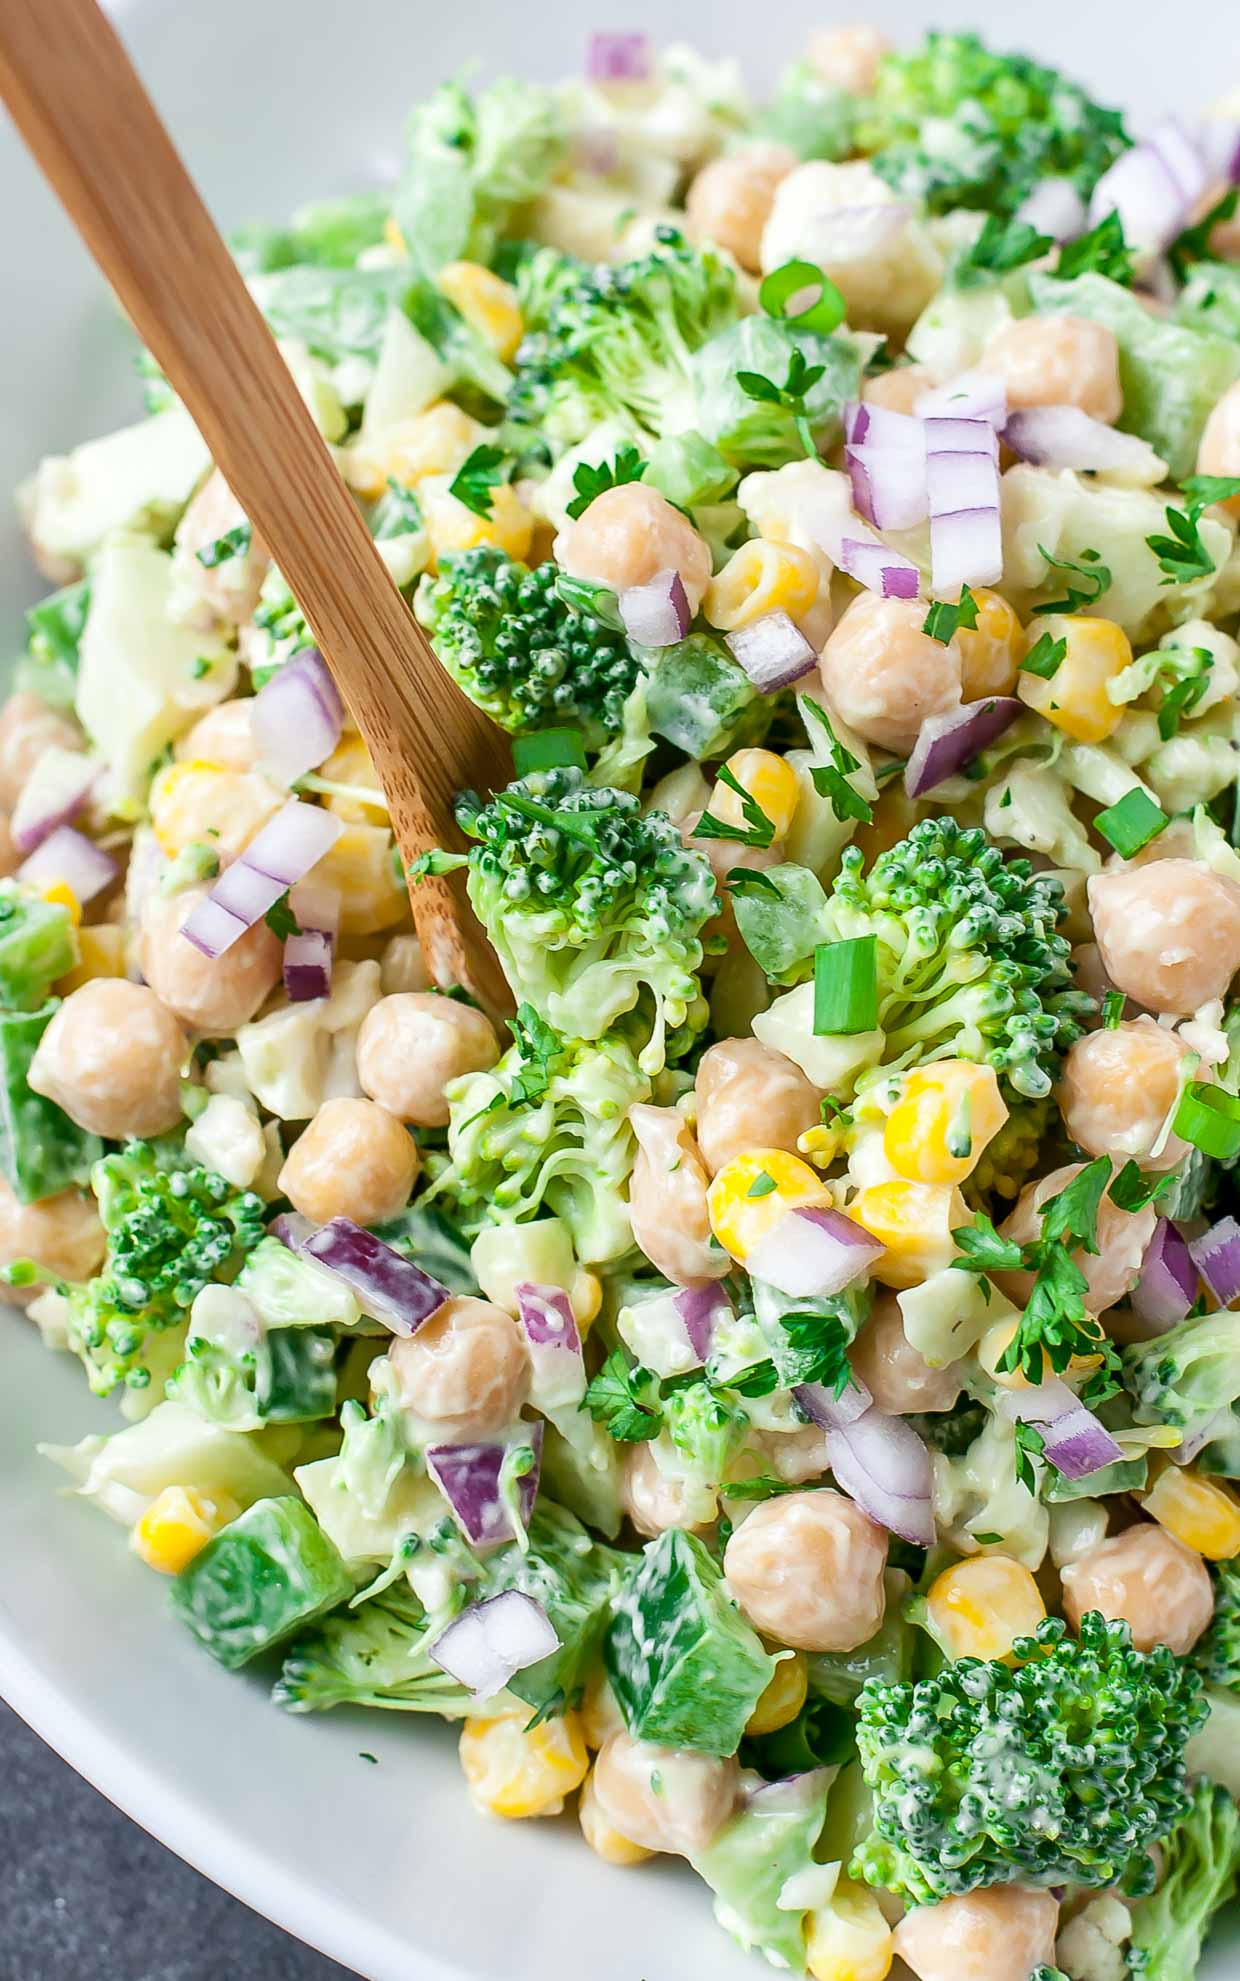 8 Tasty Recipes to Try - Broccoli Cauliflower Salad